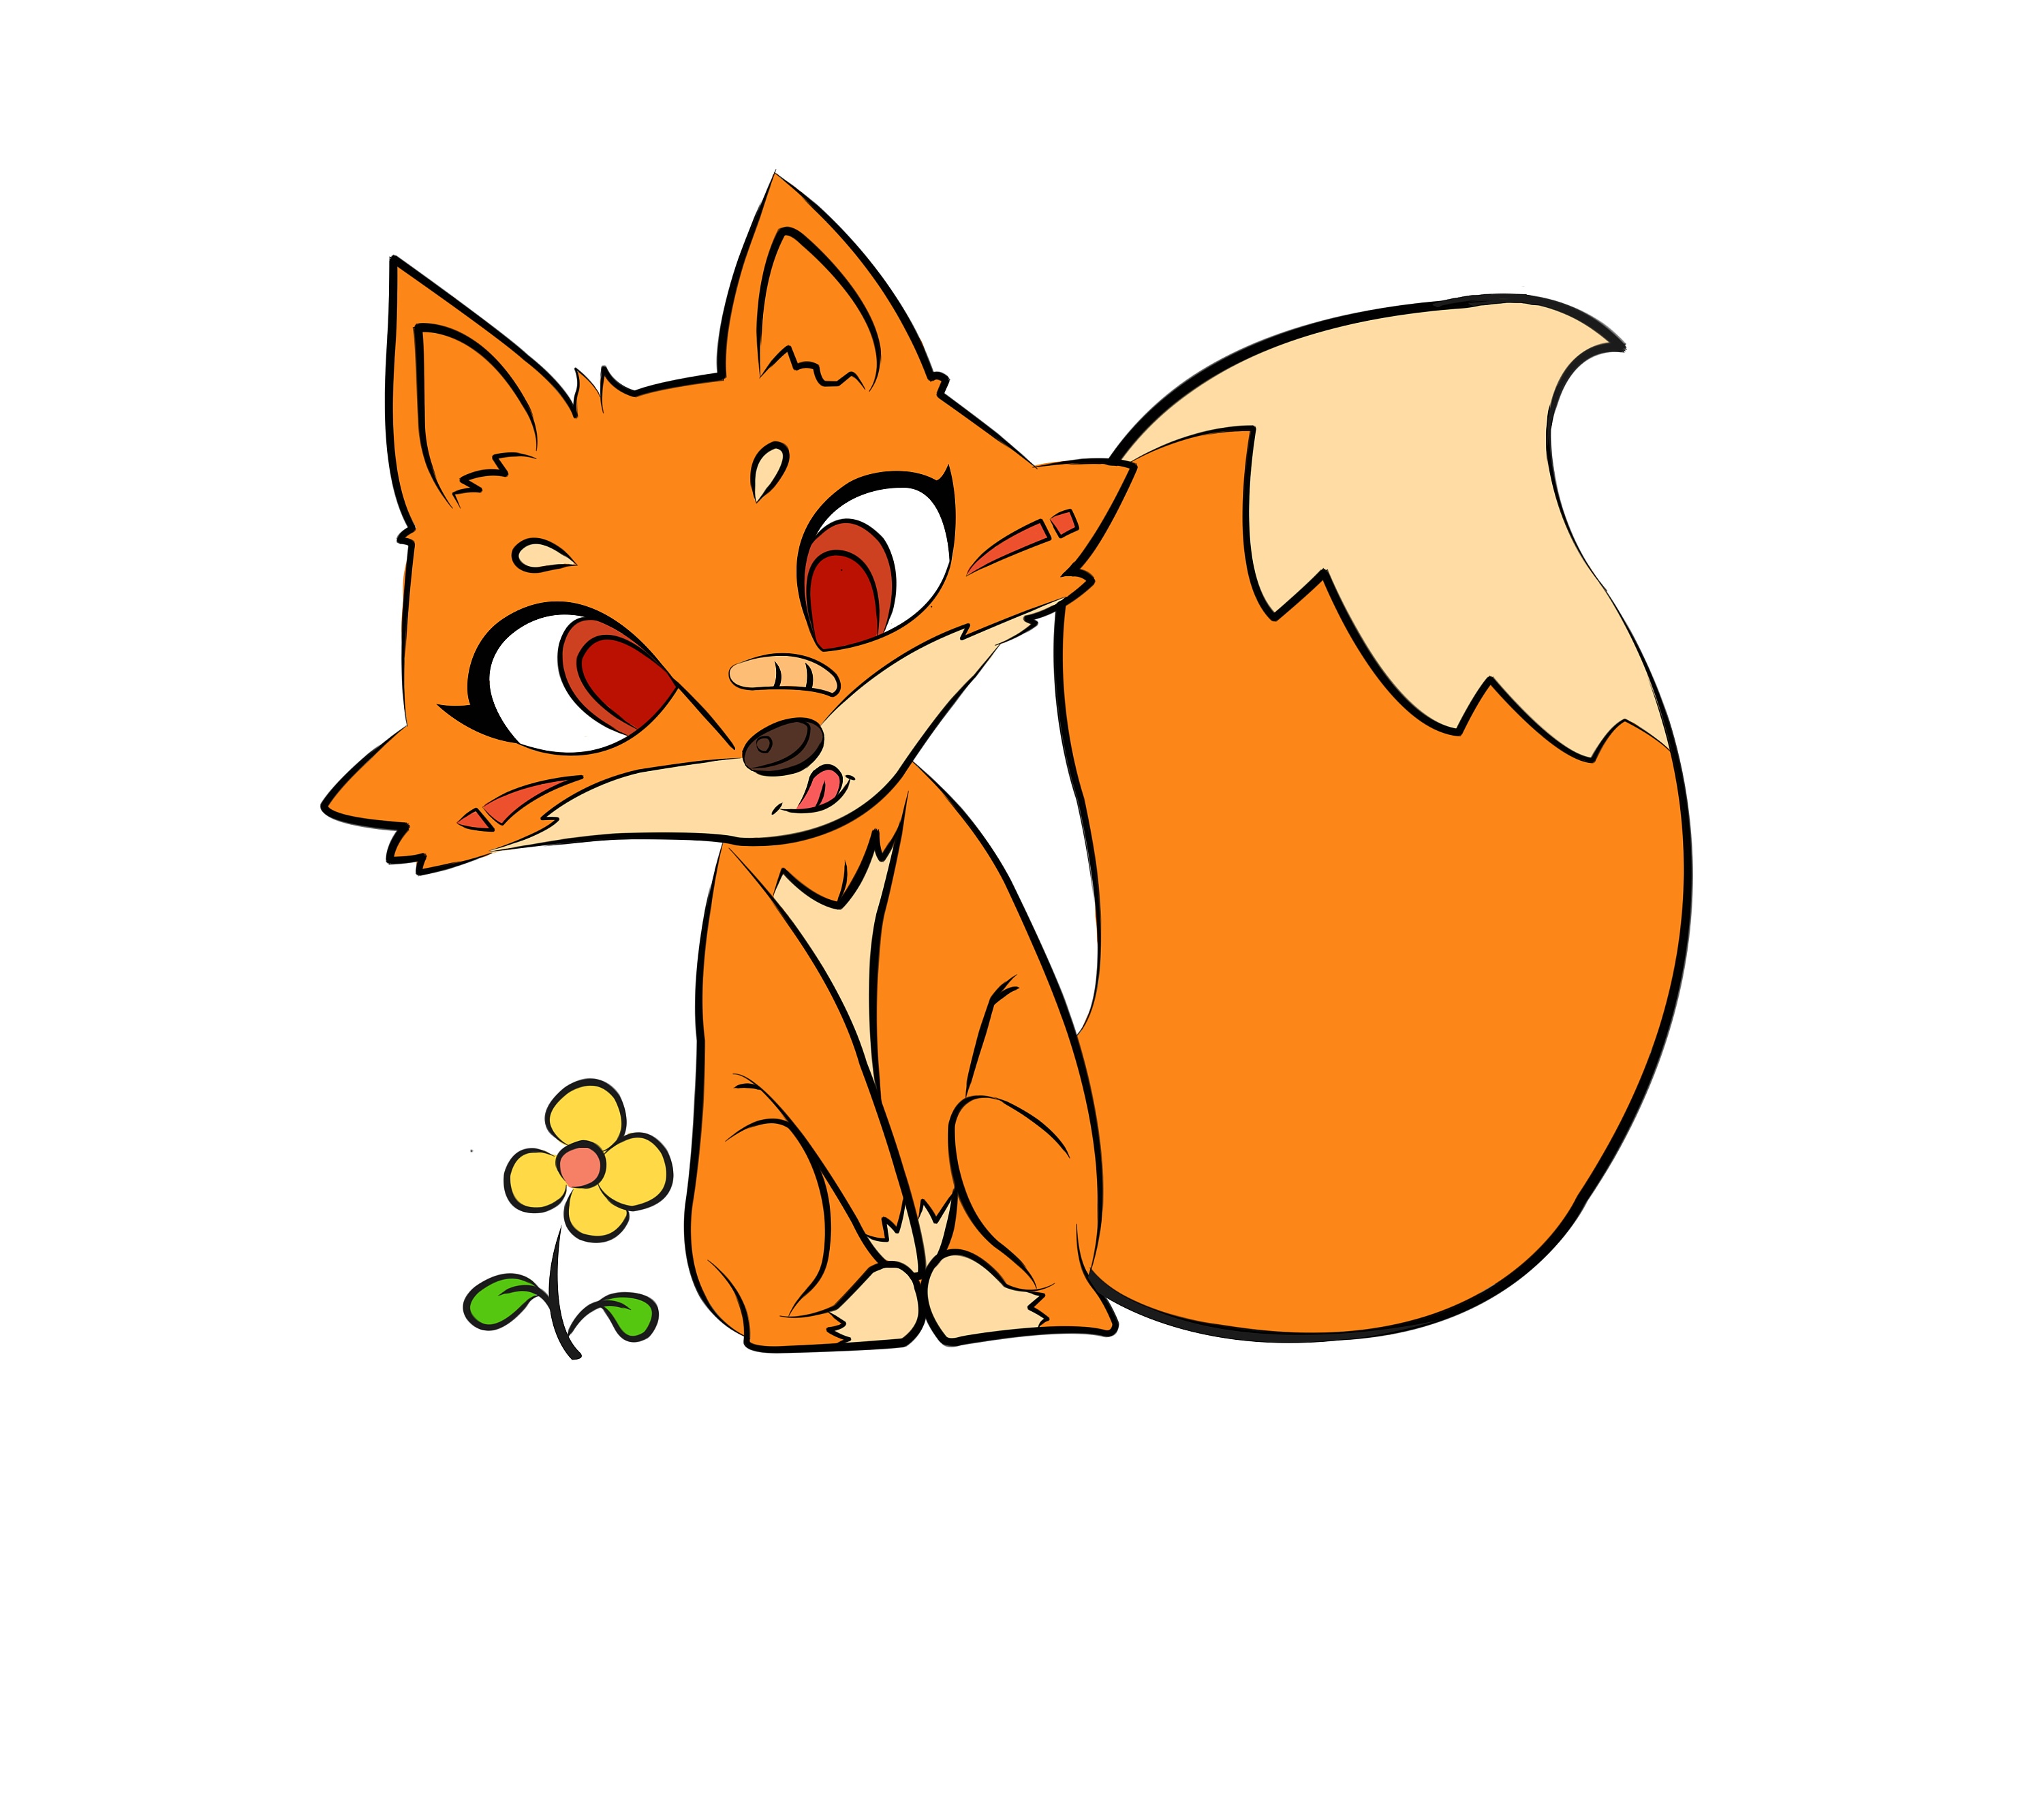 可爱小狐狸 - 堆糖，美图壁纸兴趣社区